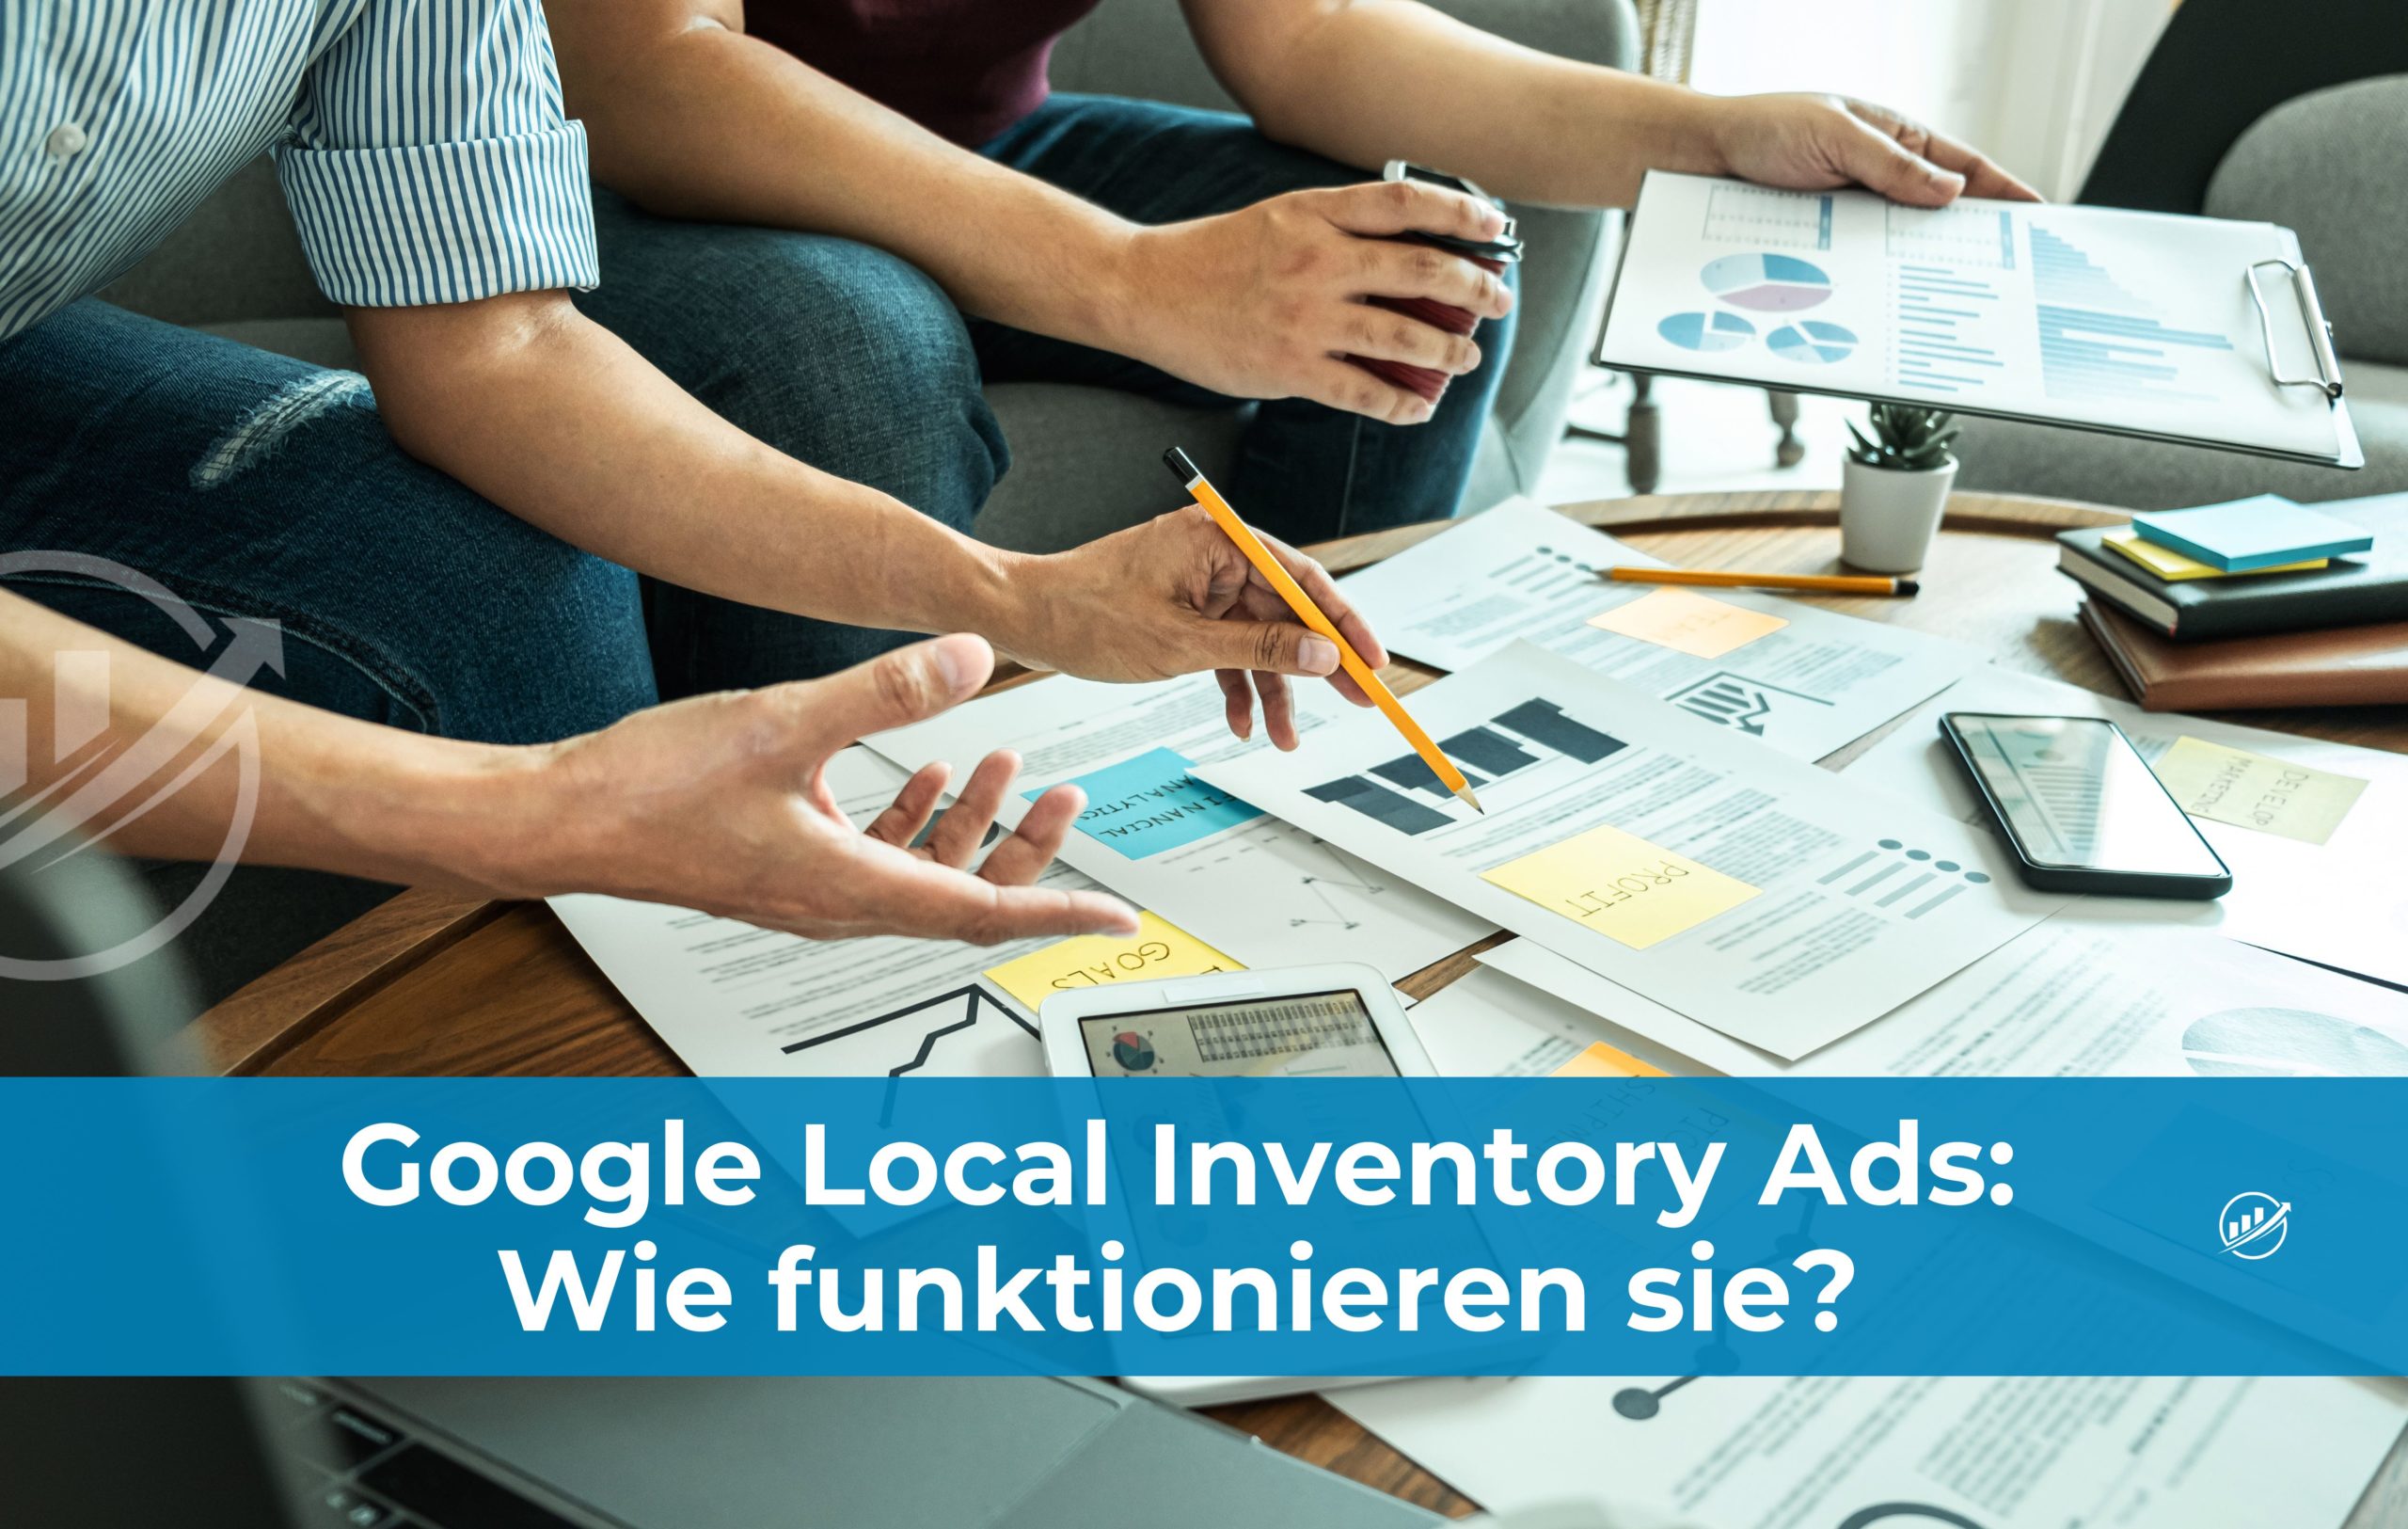 Google Local Inventory Ads: Wie funktionieren sie?